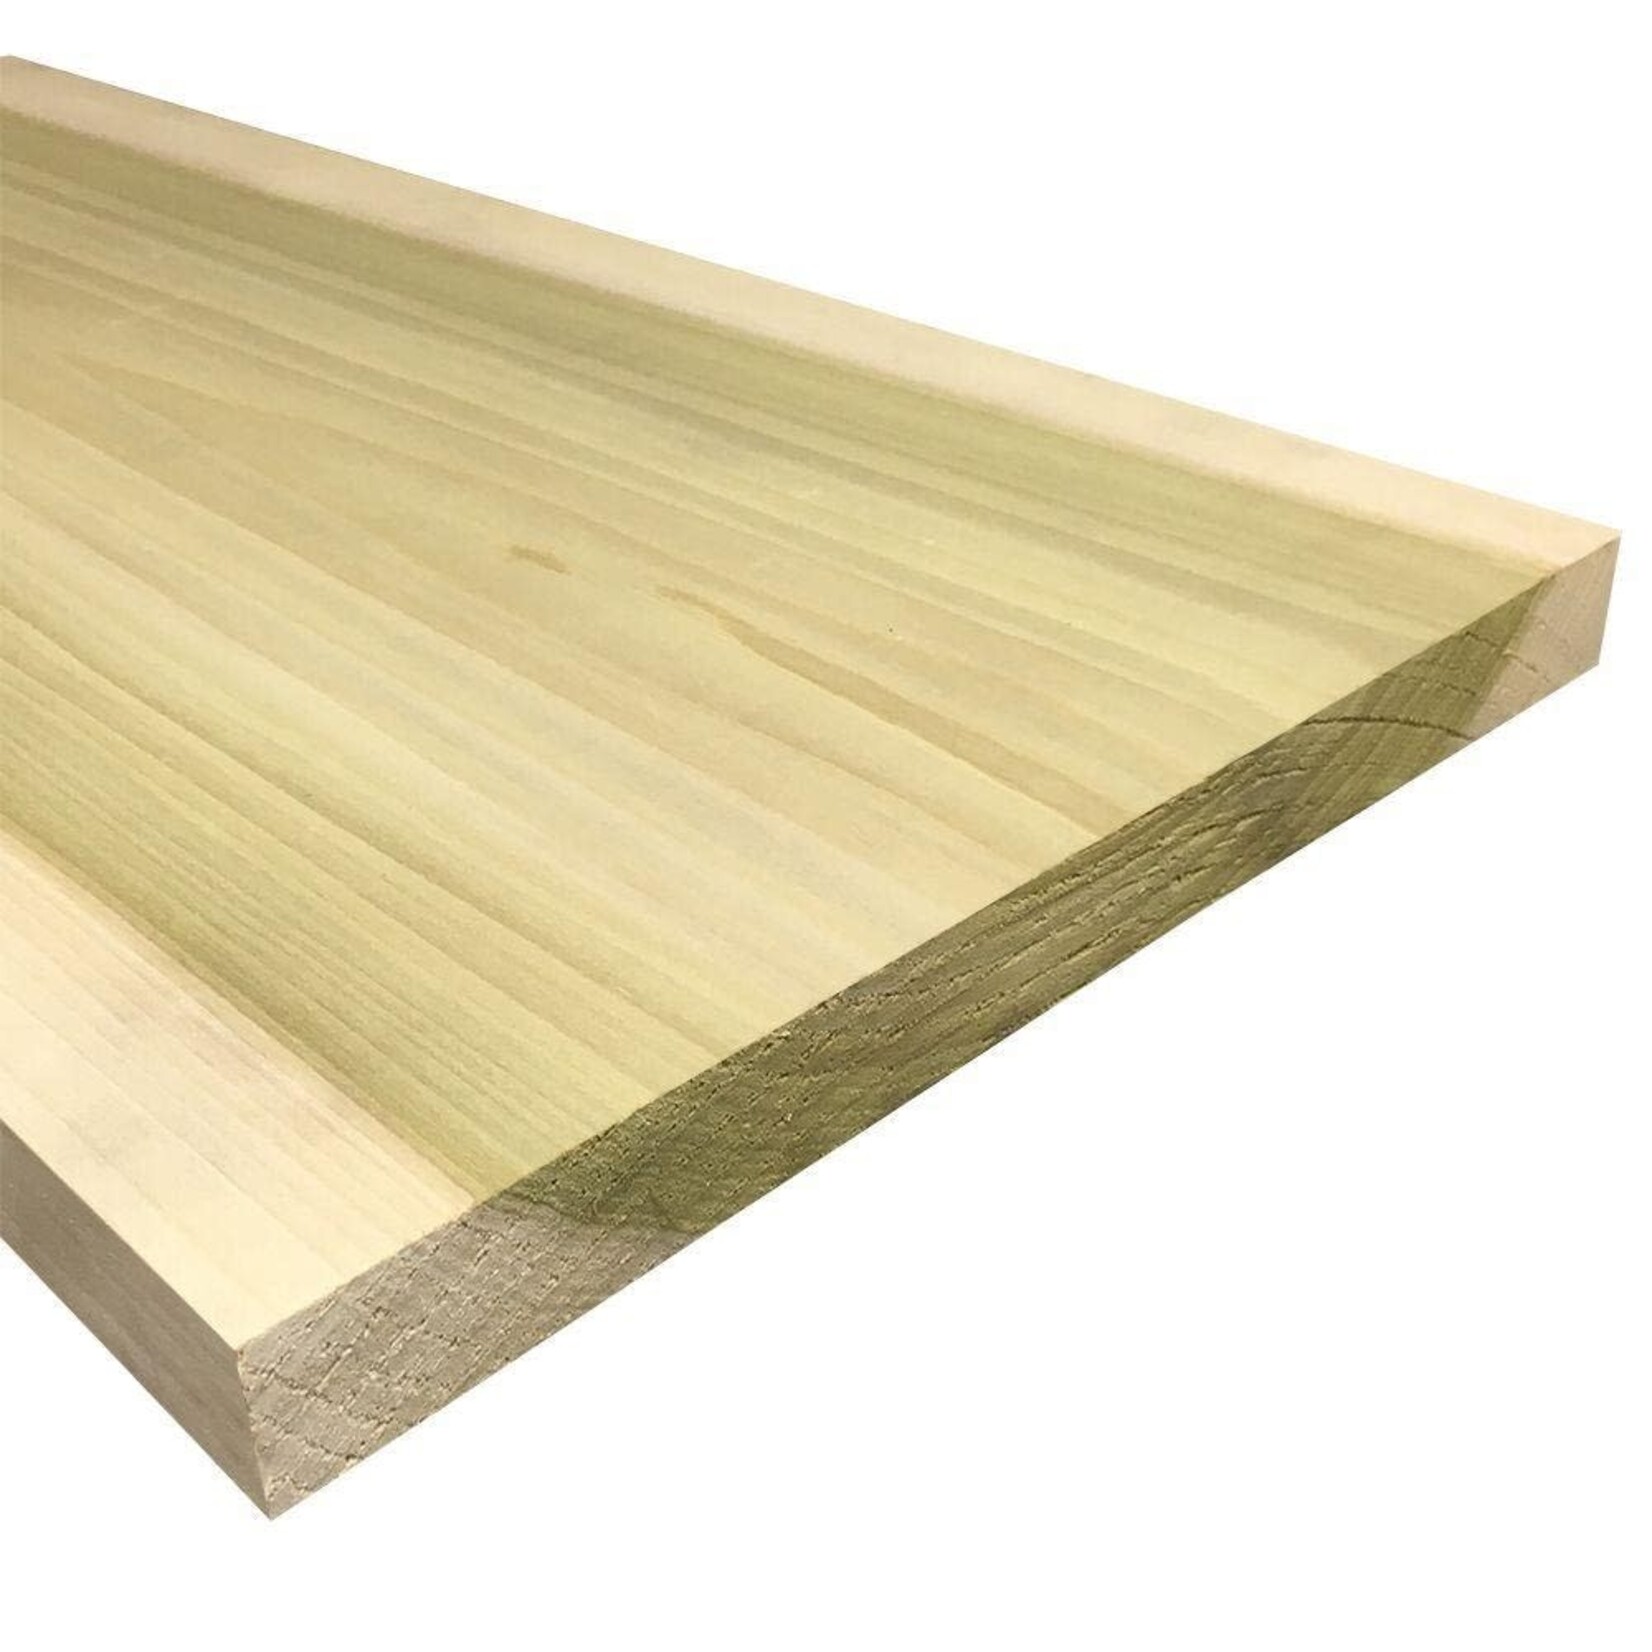 A&M Supply Poplar Lumber 3/4" x  6" x 8 Foot